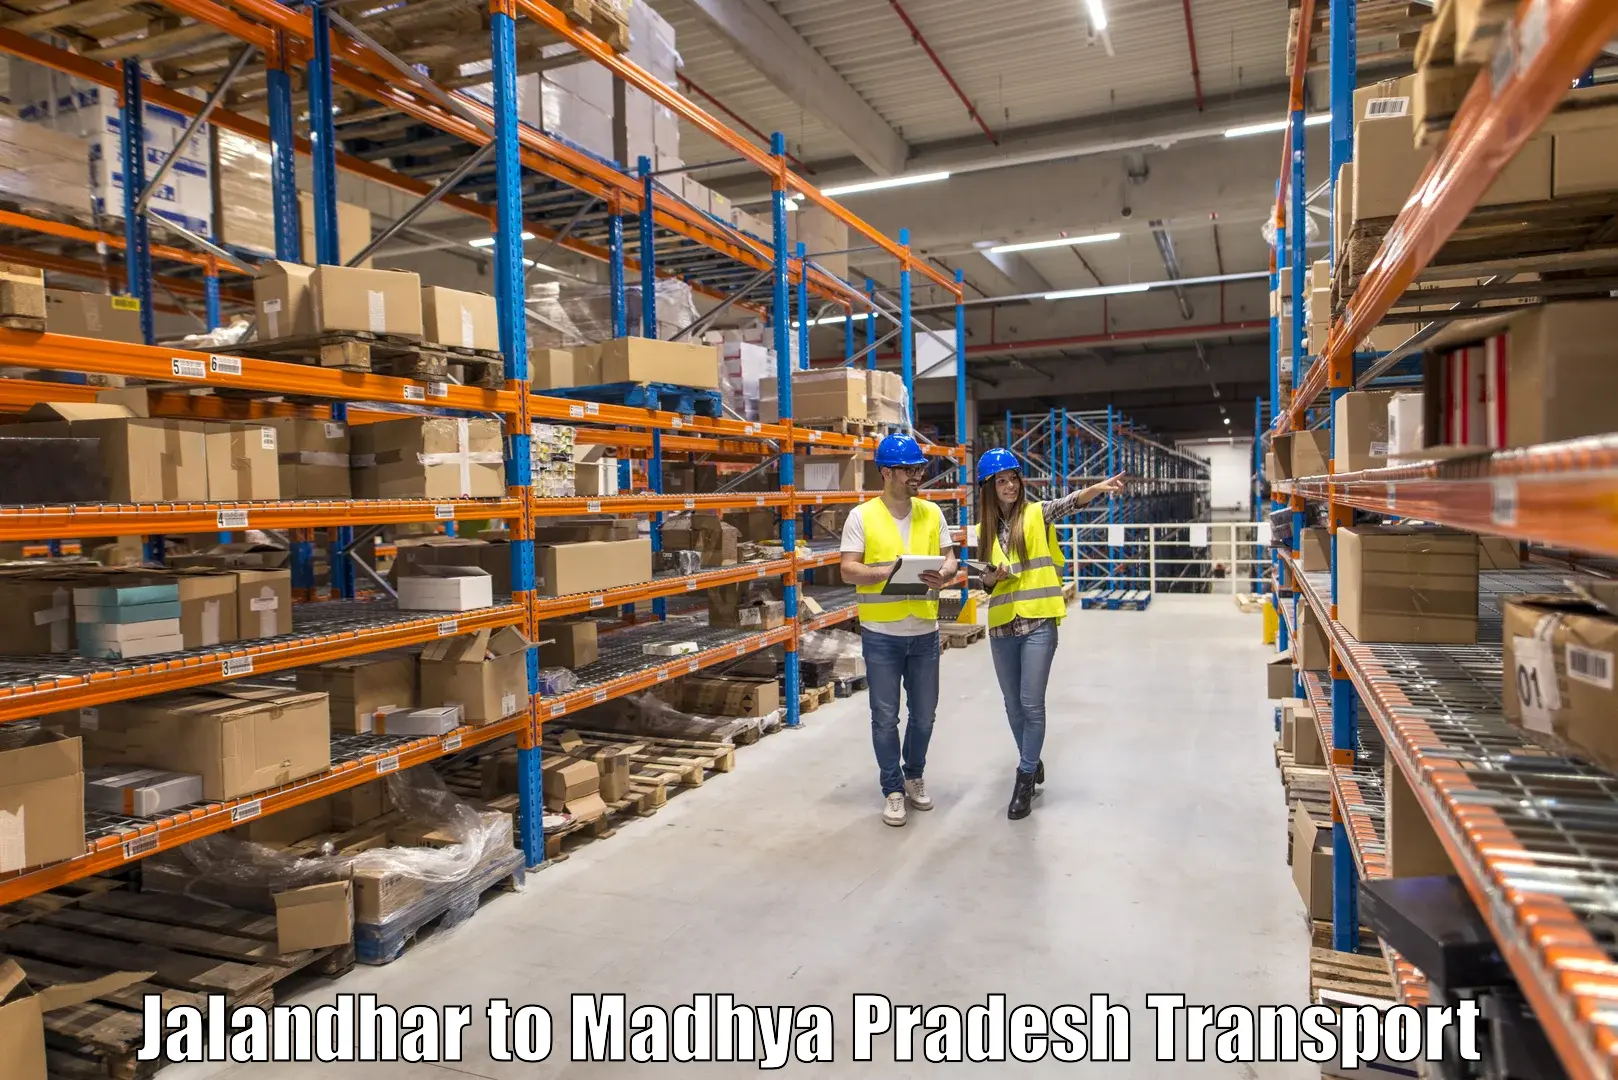 Shipping partner Jalandhar to Sihora